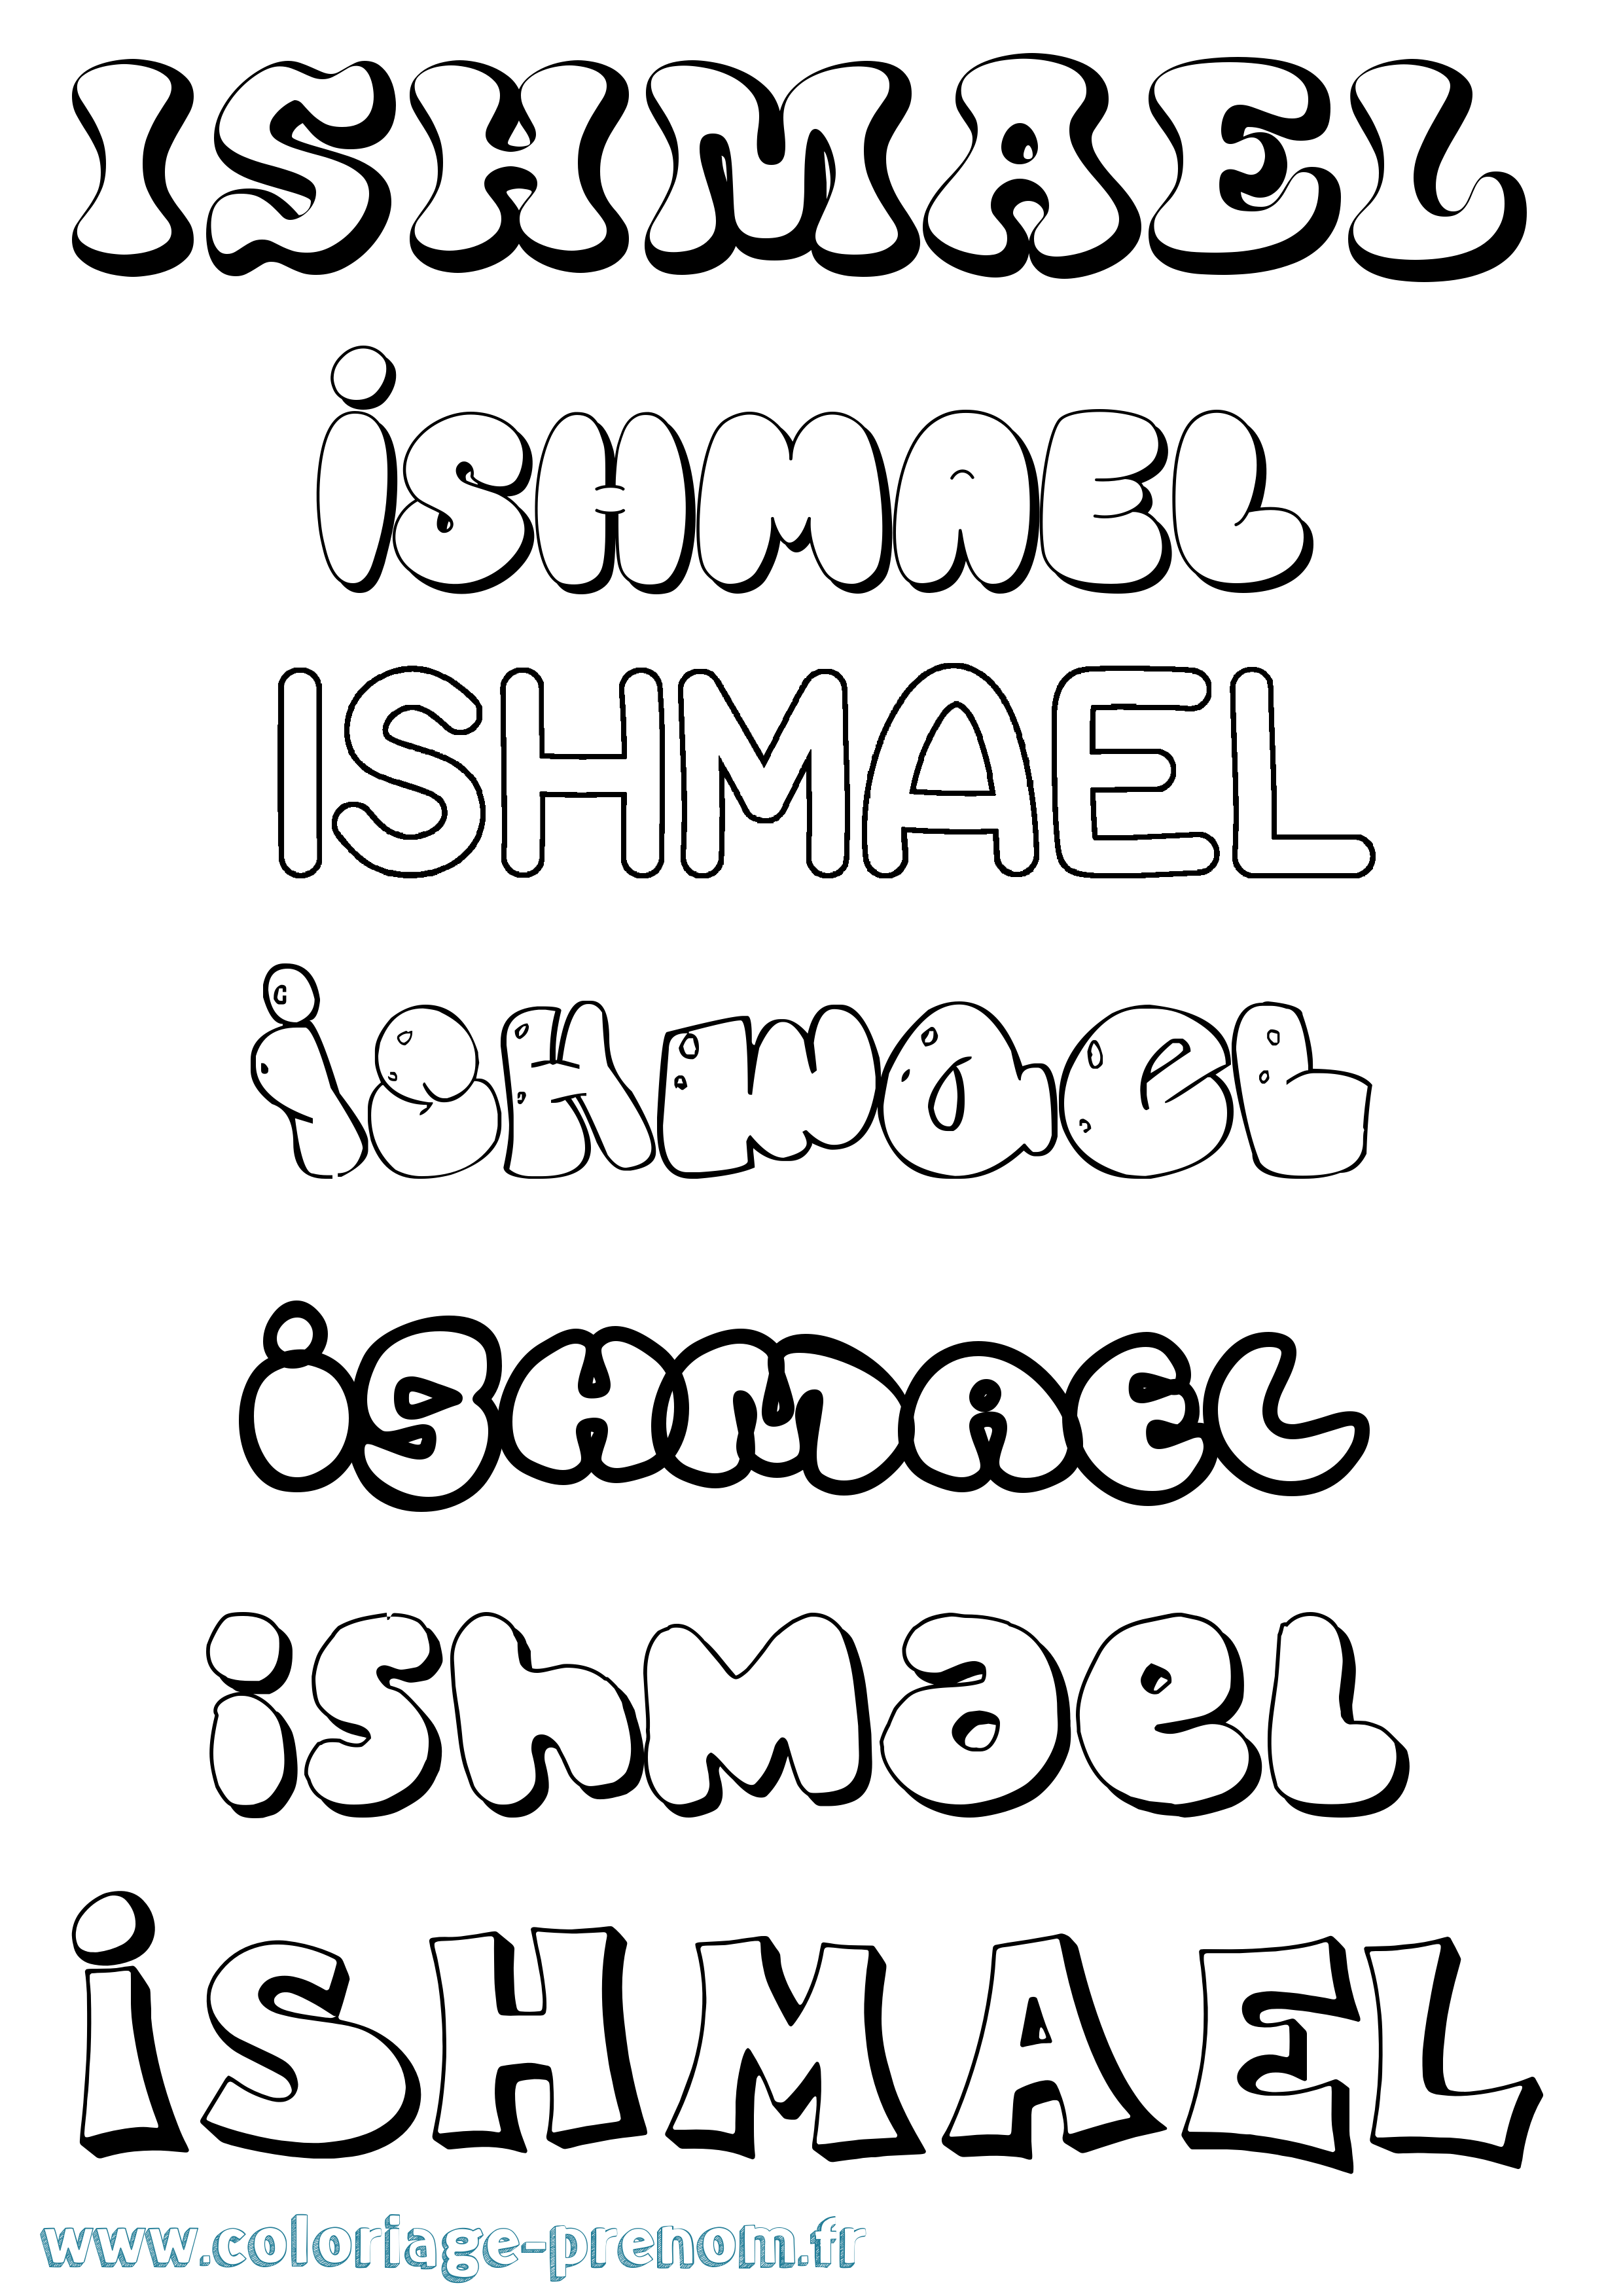 Coloriage prénom Ishmael Bubble